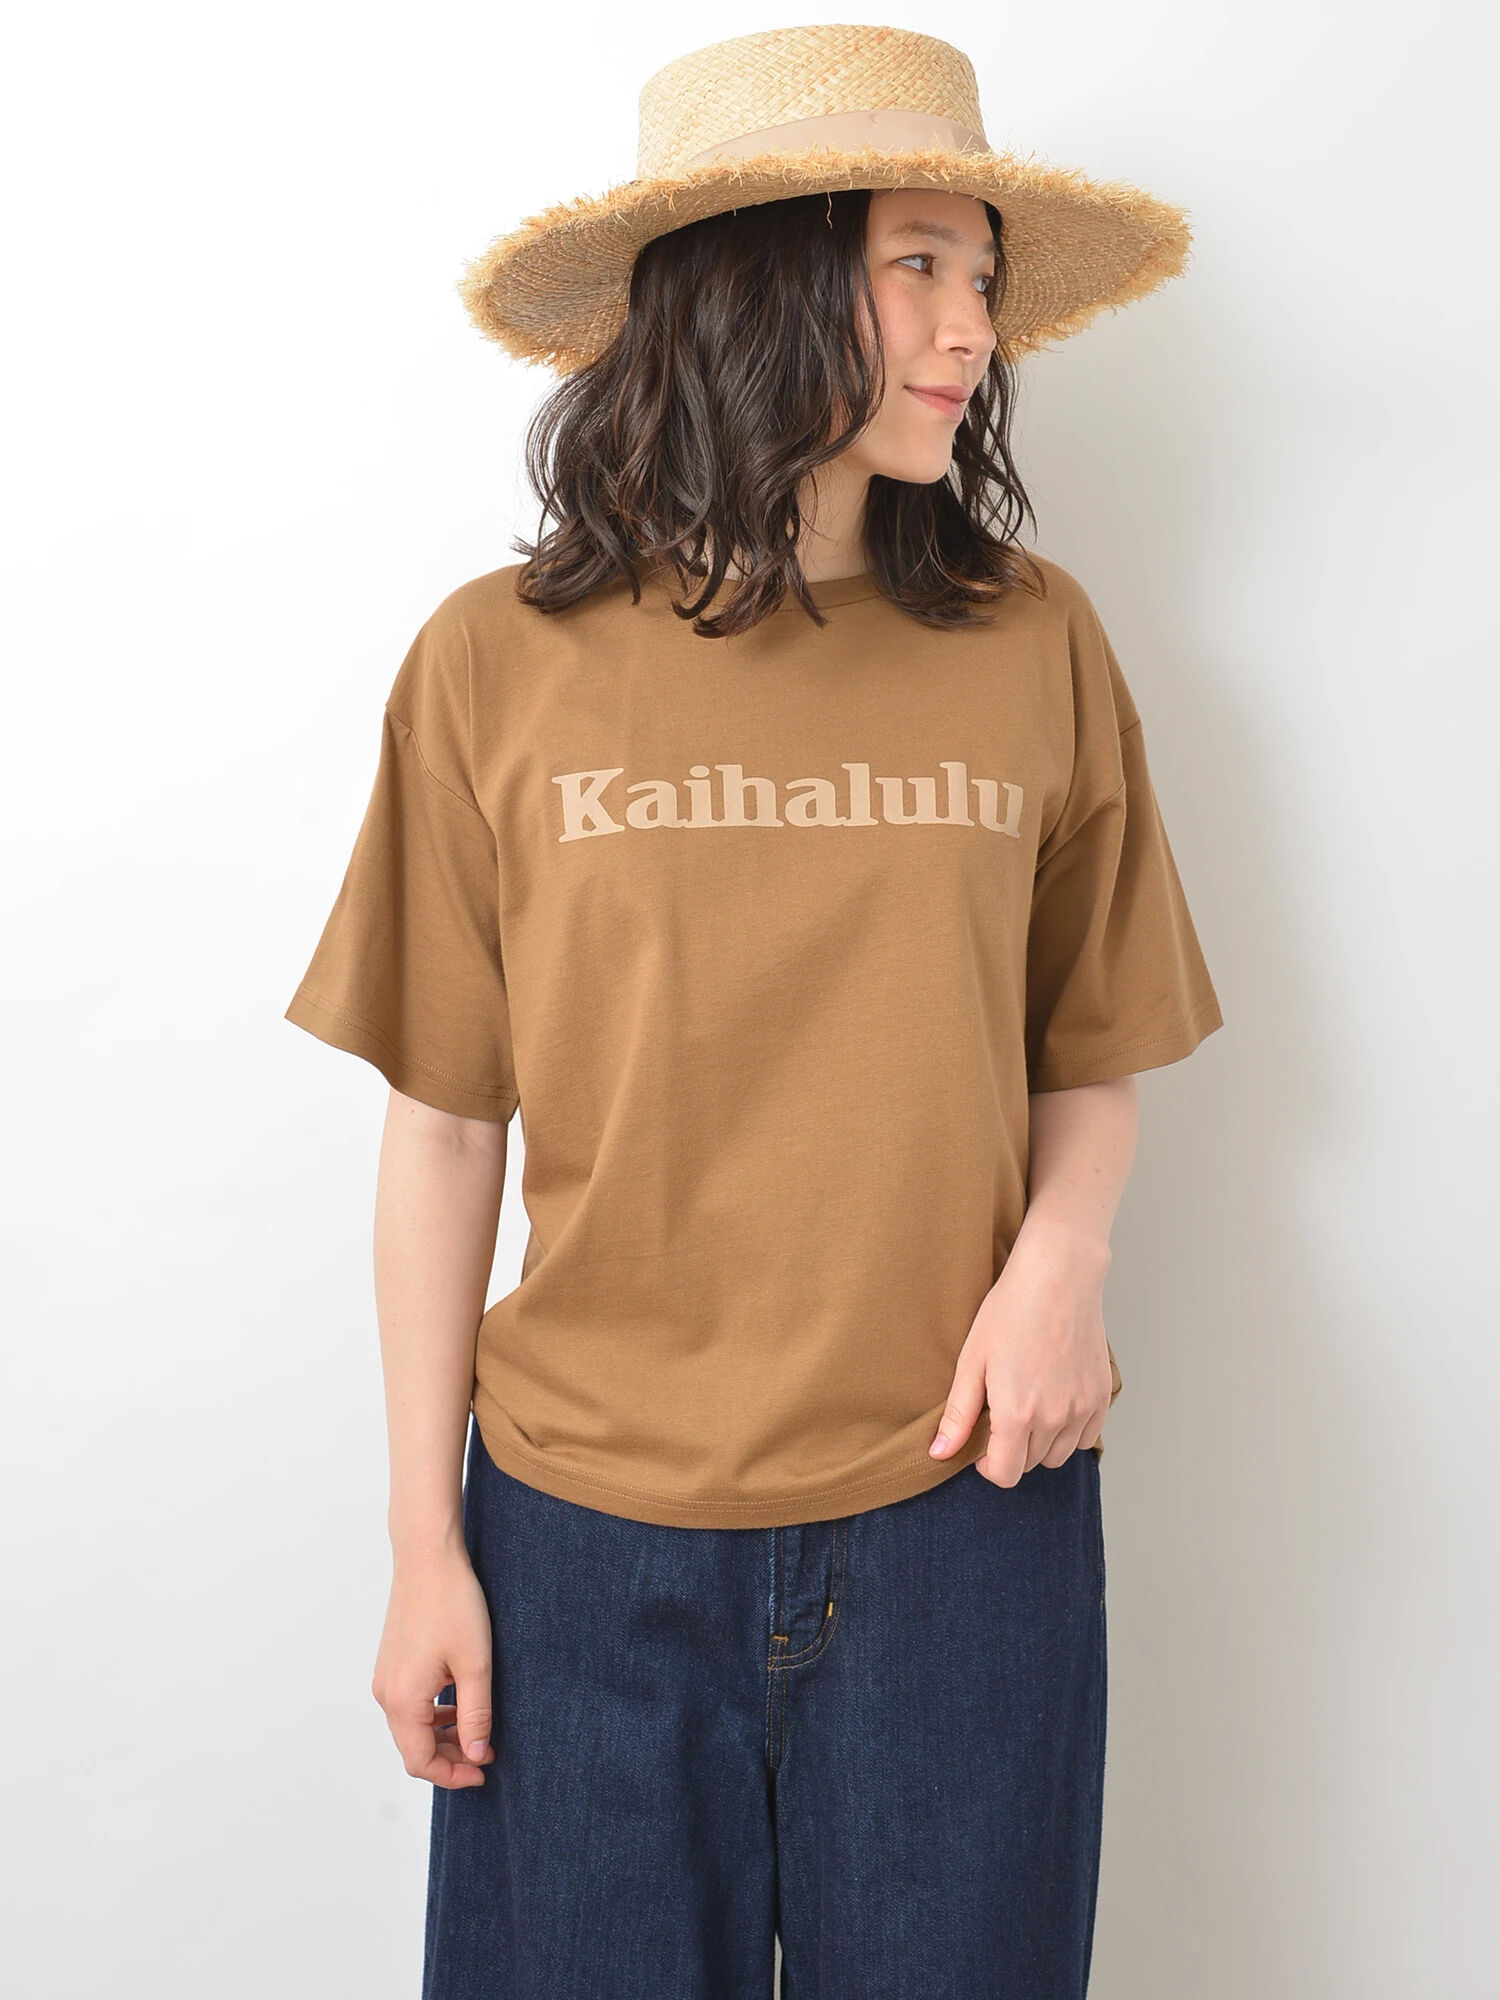 ・KaihaluluオーガニックコットンBigTシャツ